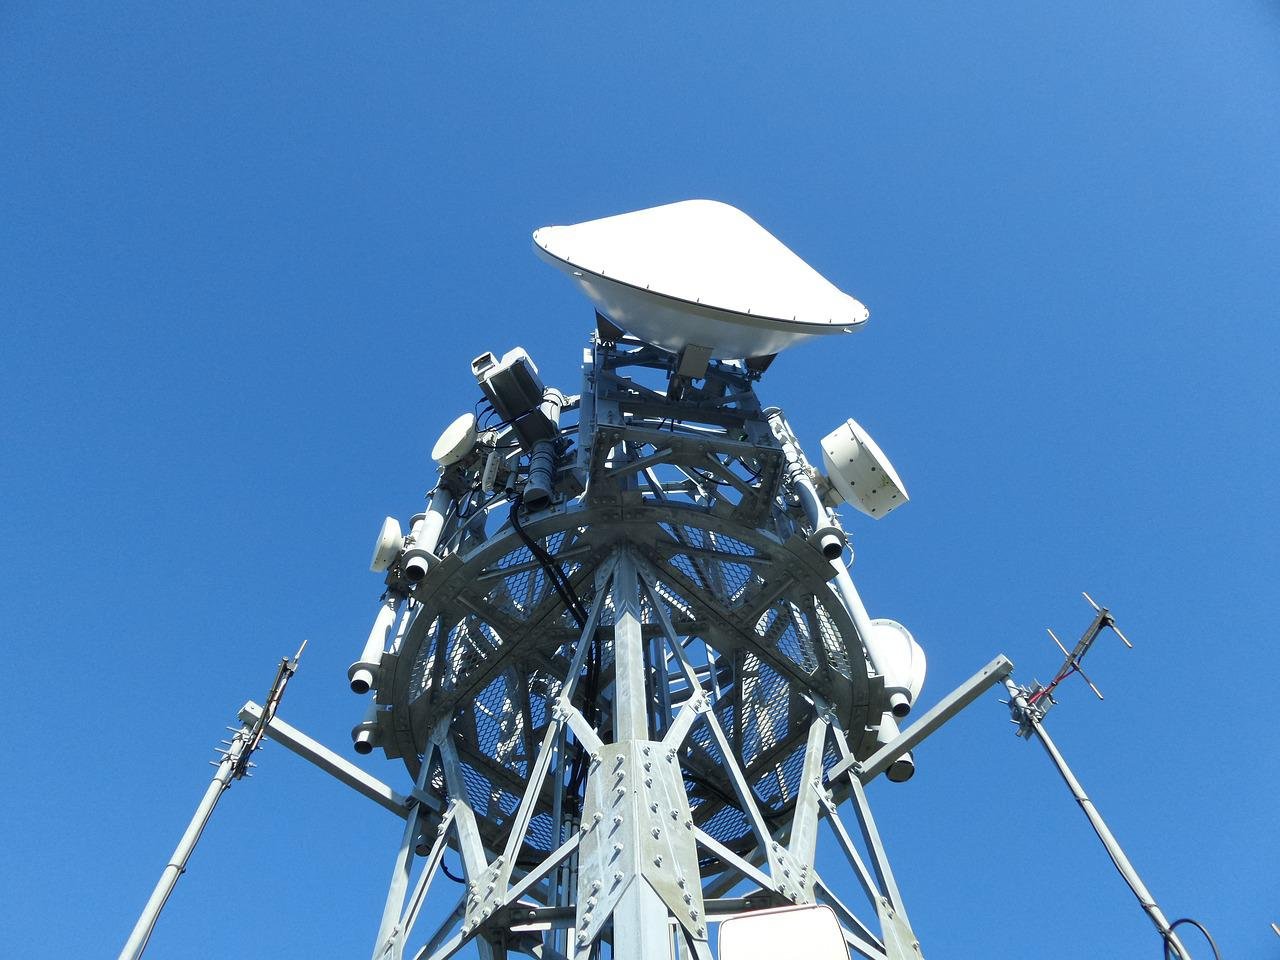 Lei das Antenas desburocratiza processo de instalação de infraestrutura de telecomunicações em São Paulo. (Fonte: Pixabay/FranckinJapan/Reprodução)